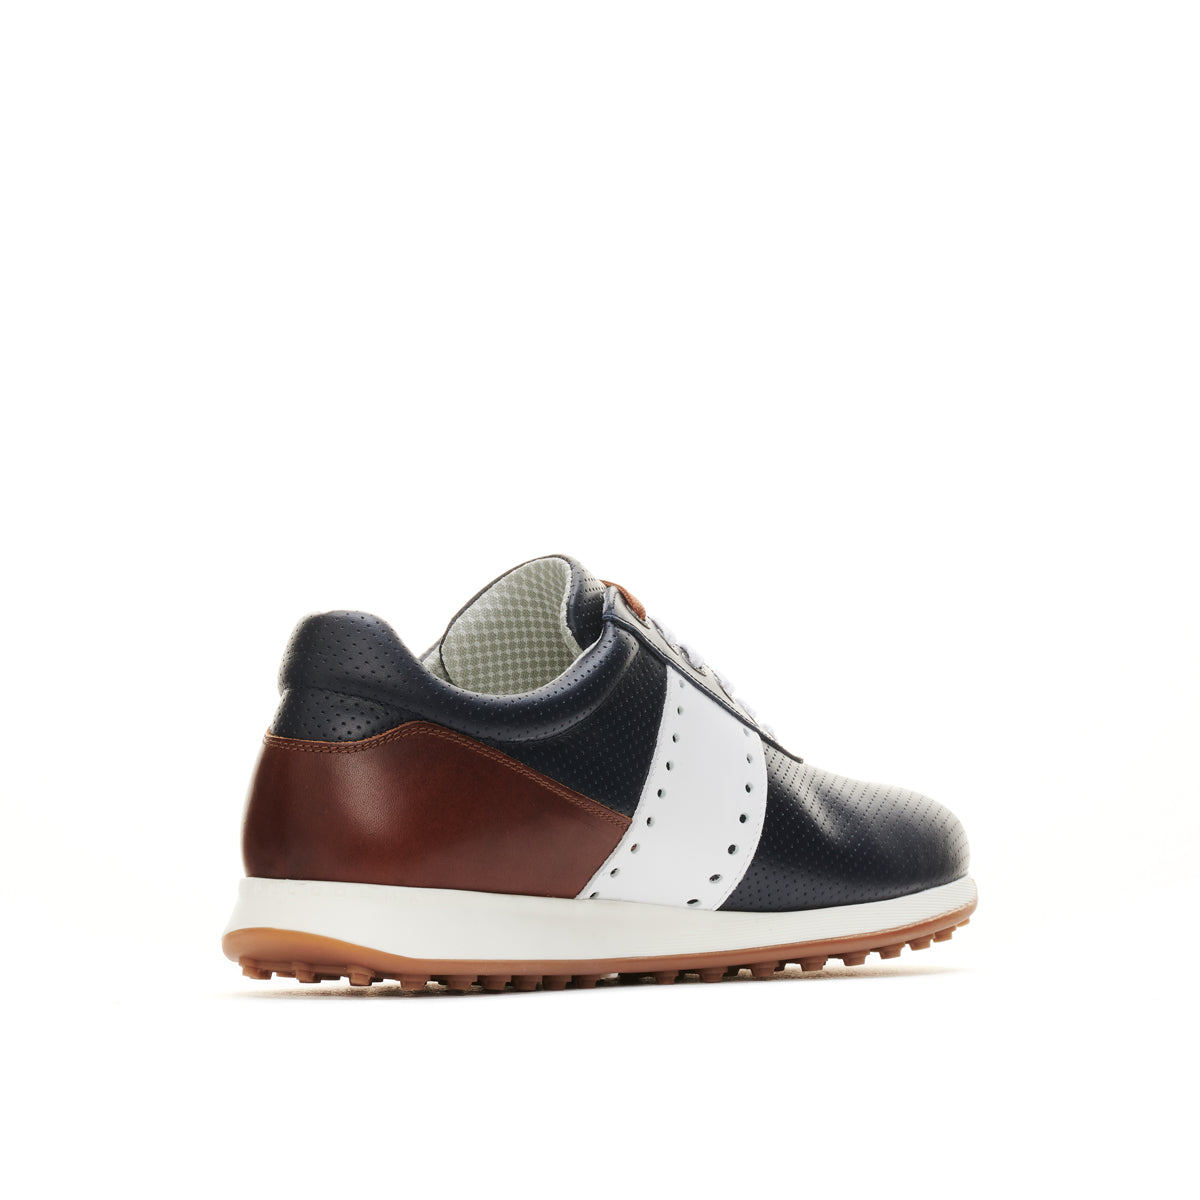 Belair Navy/Cognac Men's Golf Shoe